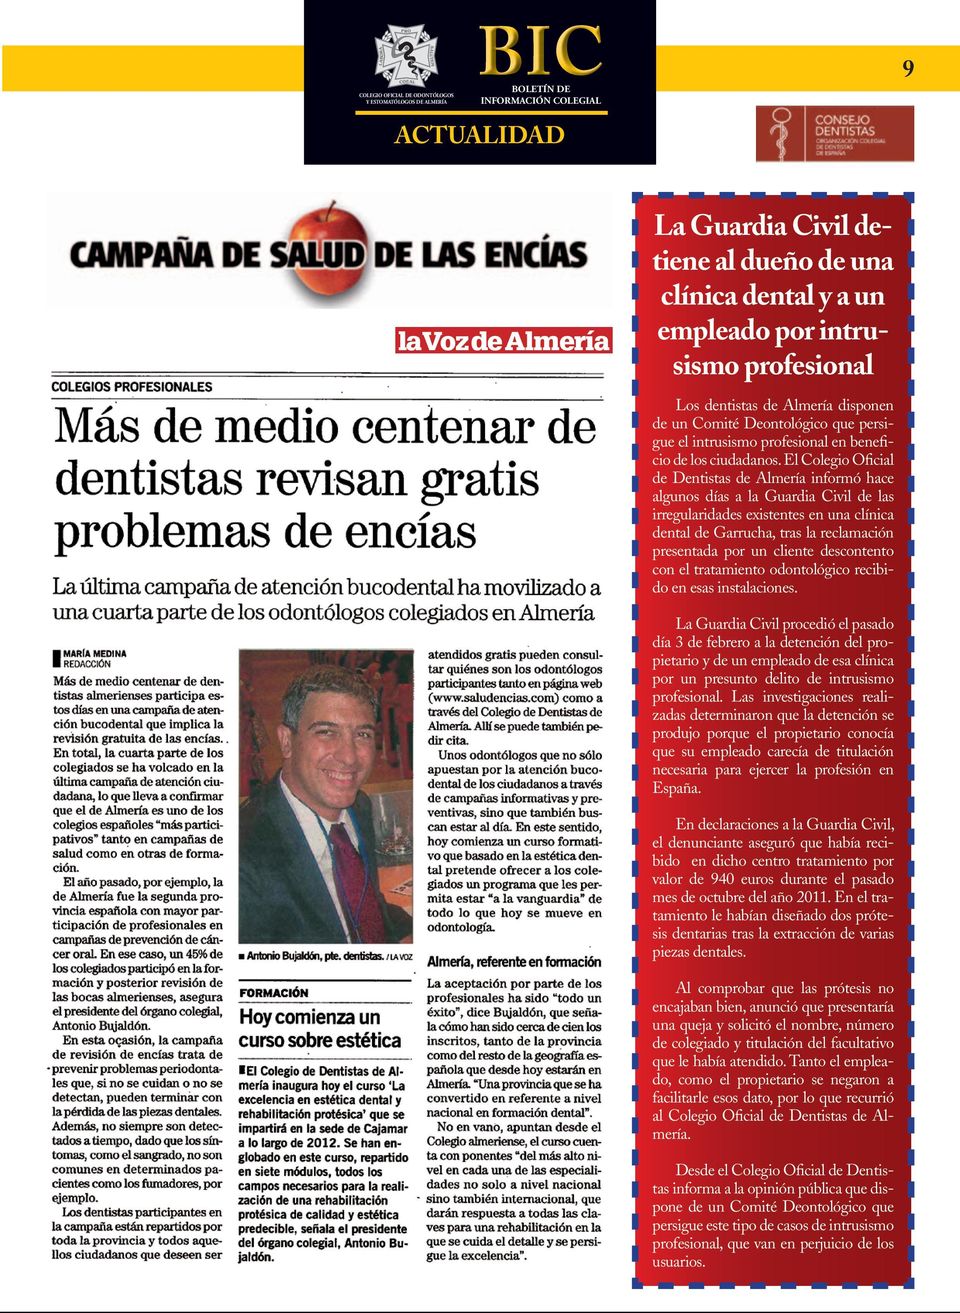 El Colegio Oficial de Dentistas de Almería informó hace algunos días a la Guardia Civil de las irregularidades existentes en una clínica dental de Garrucha, tras la reclamación presentada por un